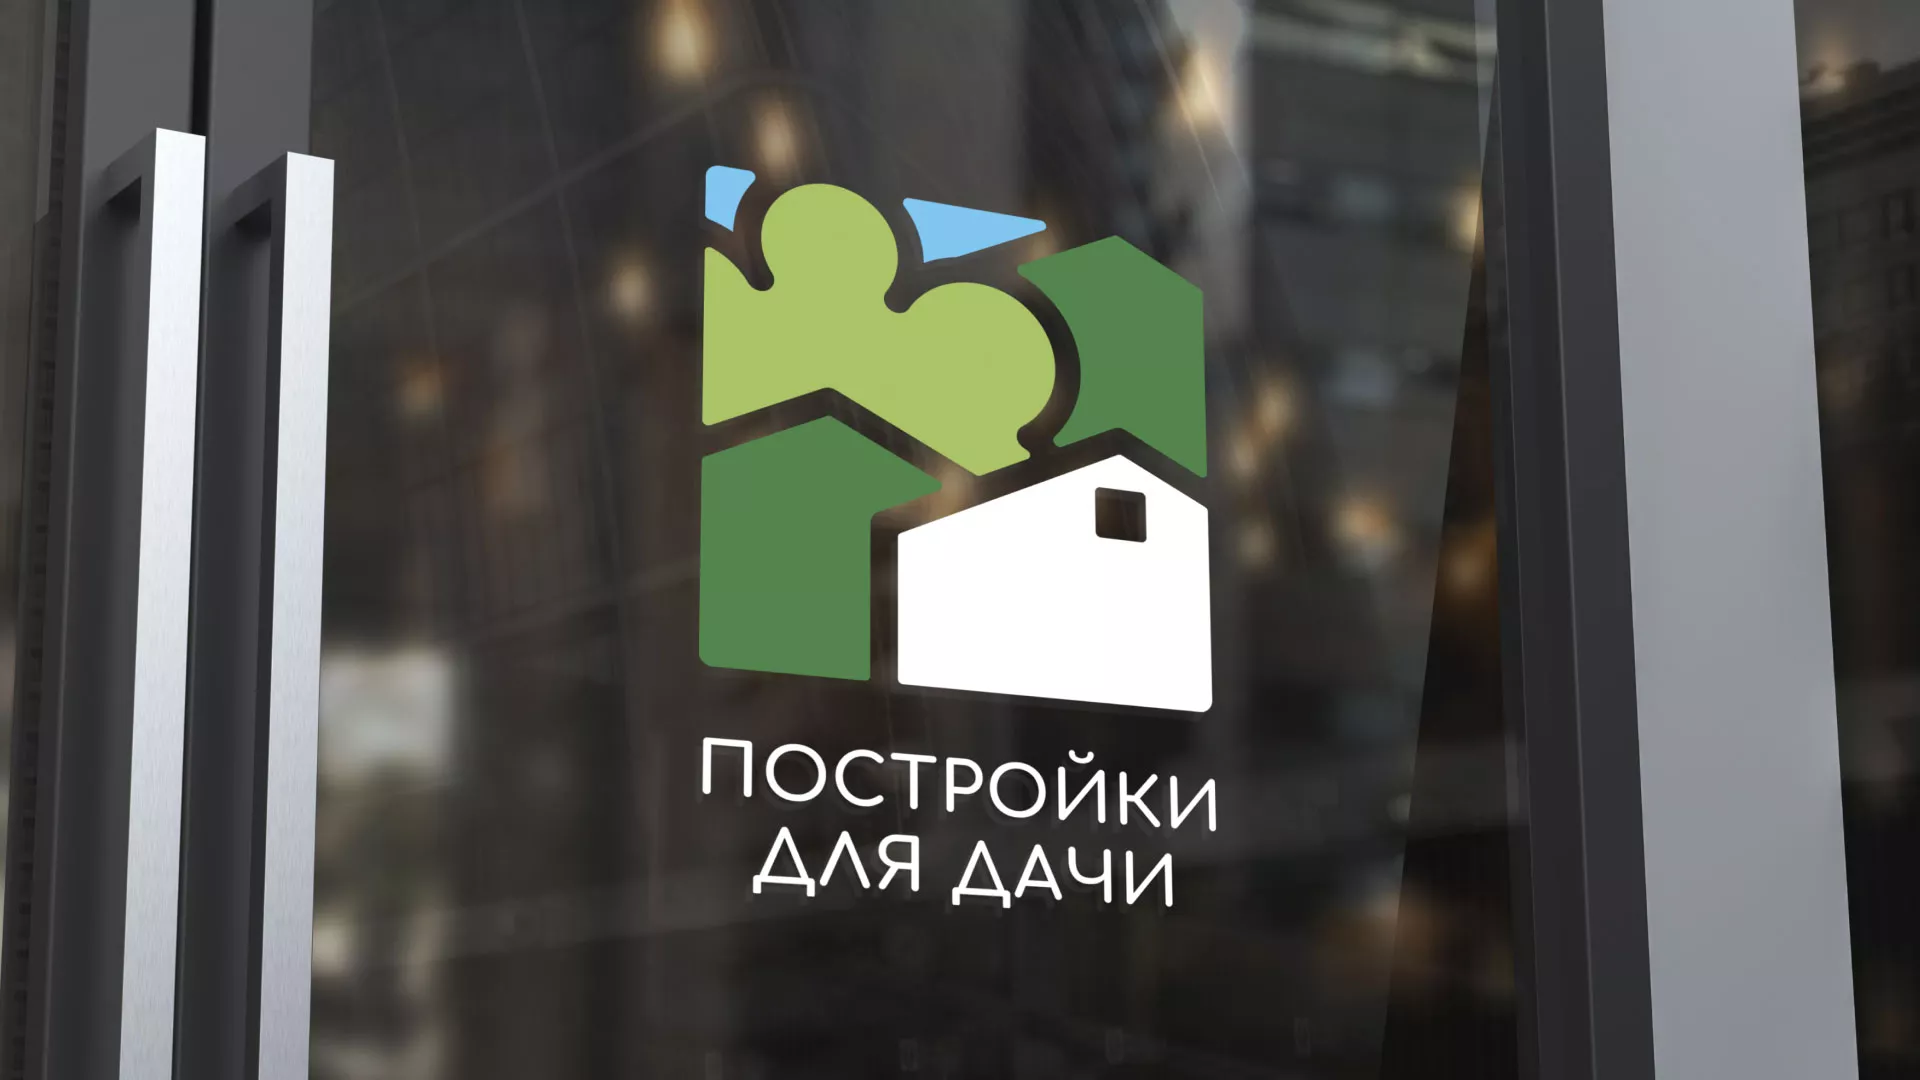 Разработка логотипа в Козловке для компании «Постройки для дачи»